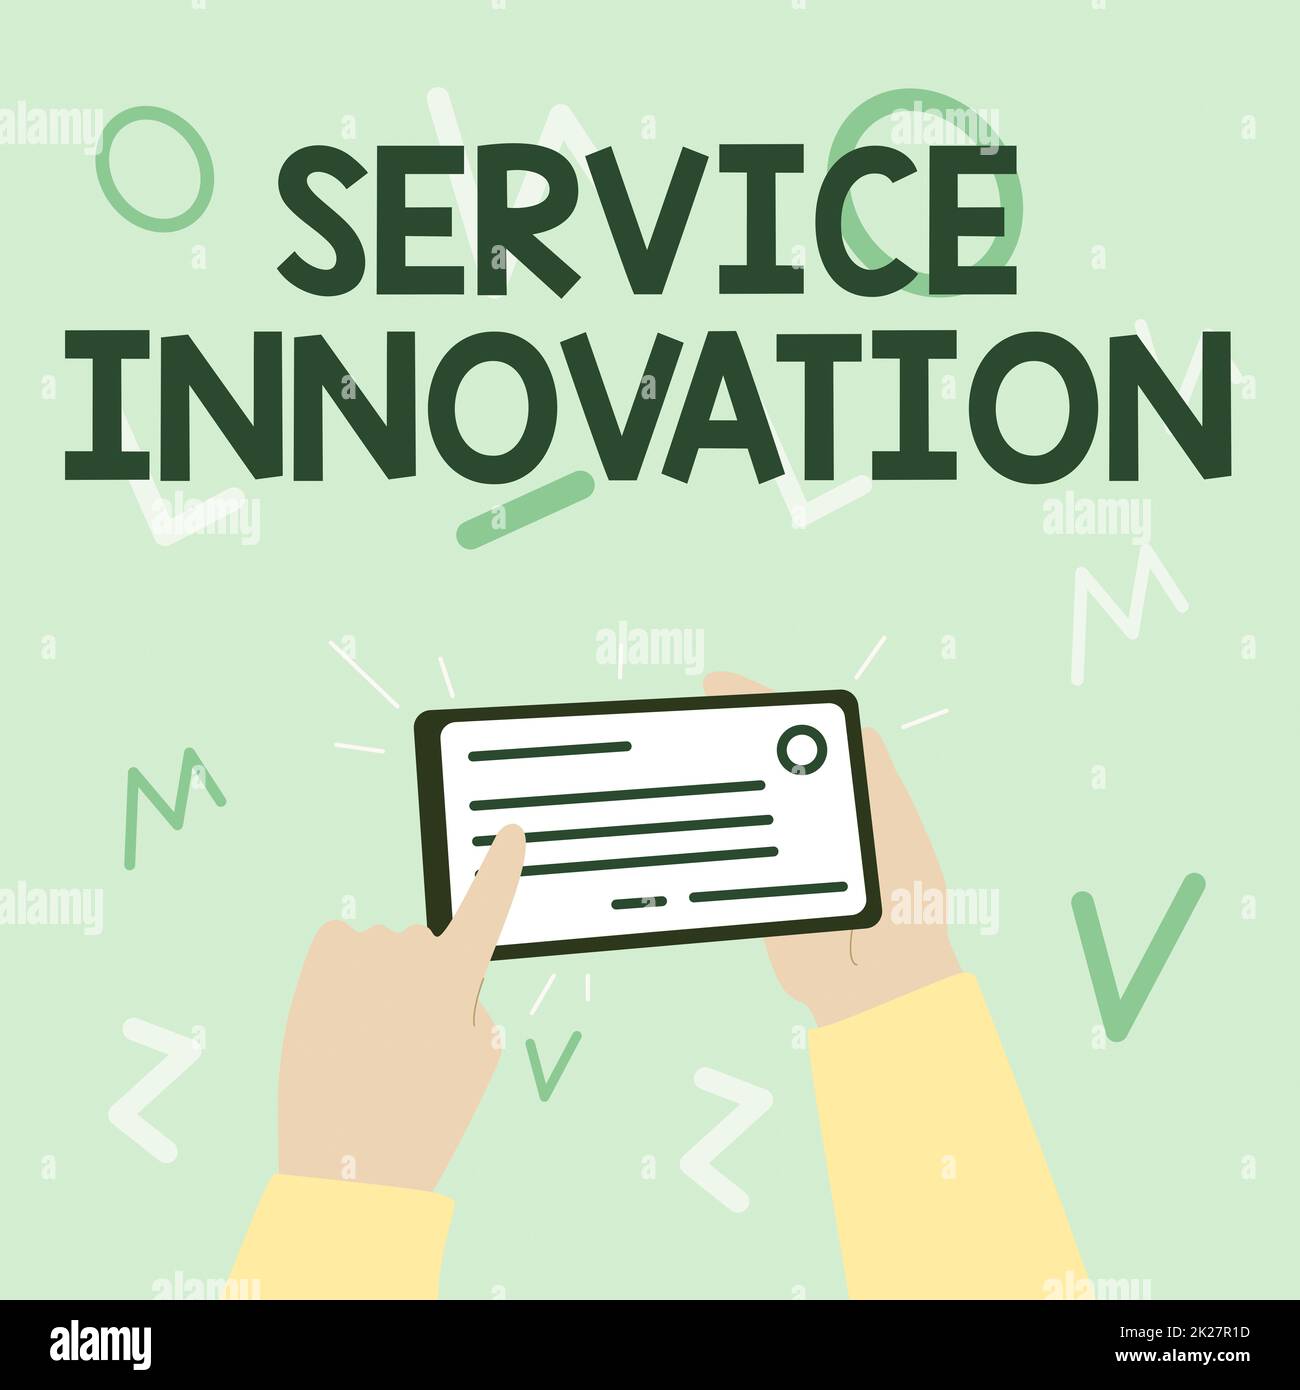 Handgeschriebenes Schild Service Innovation. Ein Wort für eine neue Art, Kunden zu bedienen, um Mehrwert zu schaffen Illustration des Handhaltens wichtiger Ausweiskarten, die darauf zeigen. Stockfoto